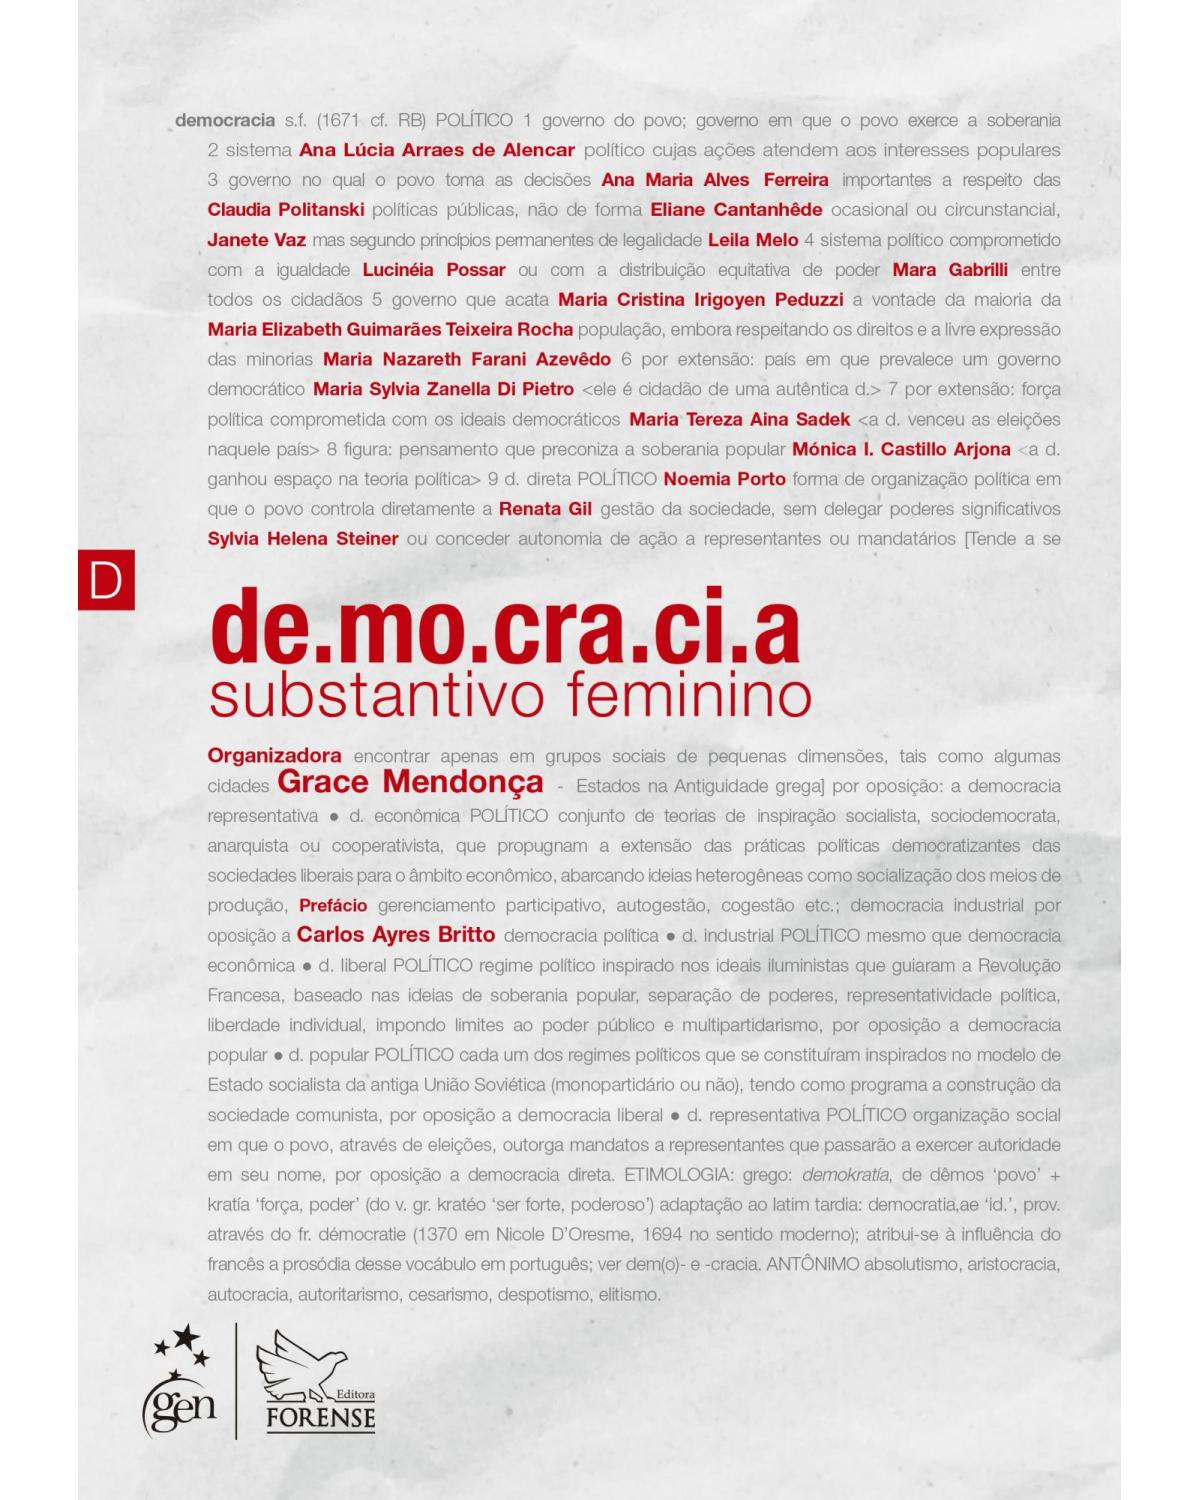 Democracia - Substantivo feminino - 1ª Edição | 2021